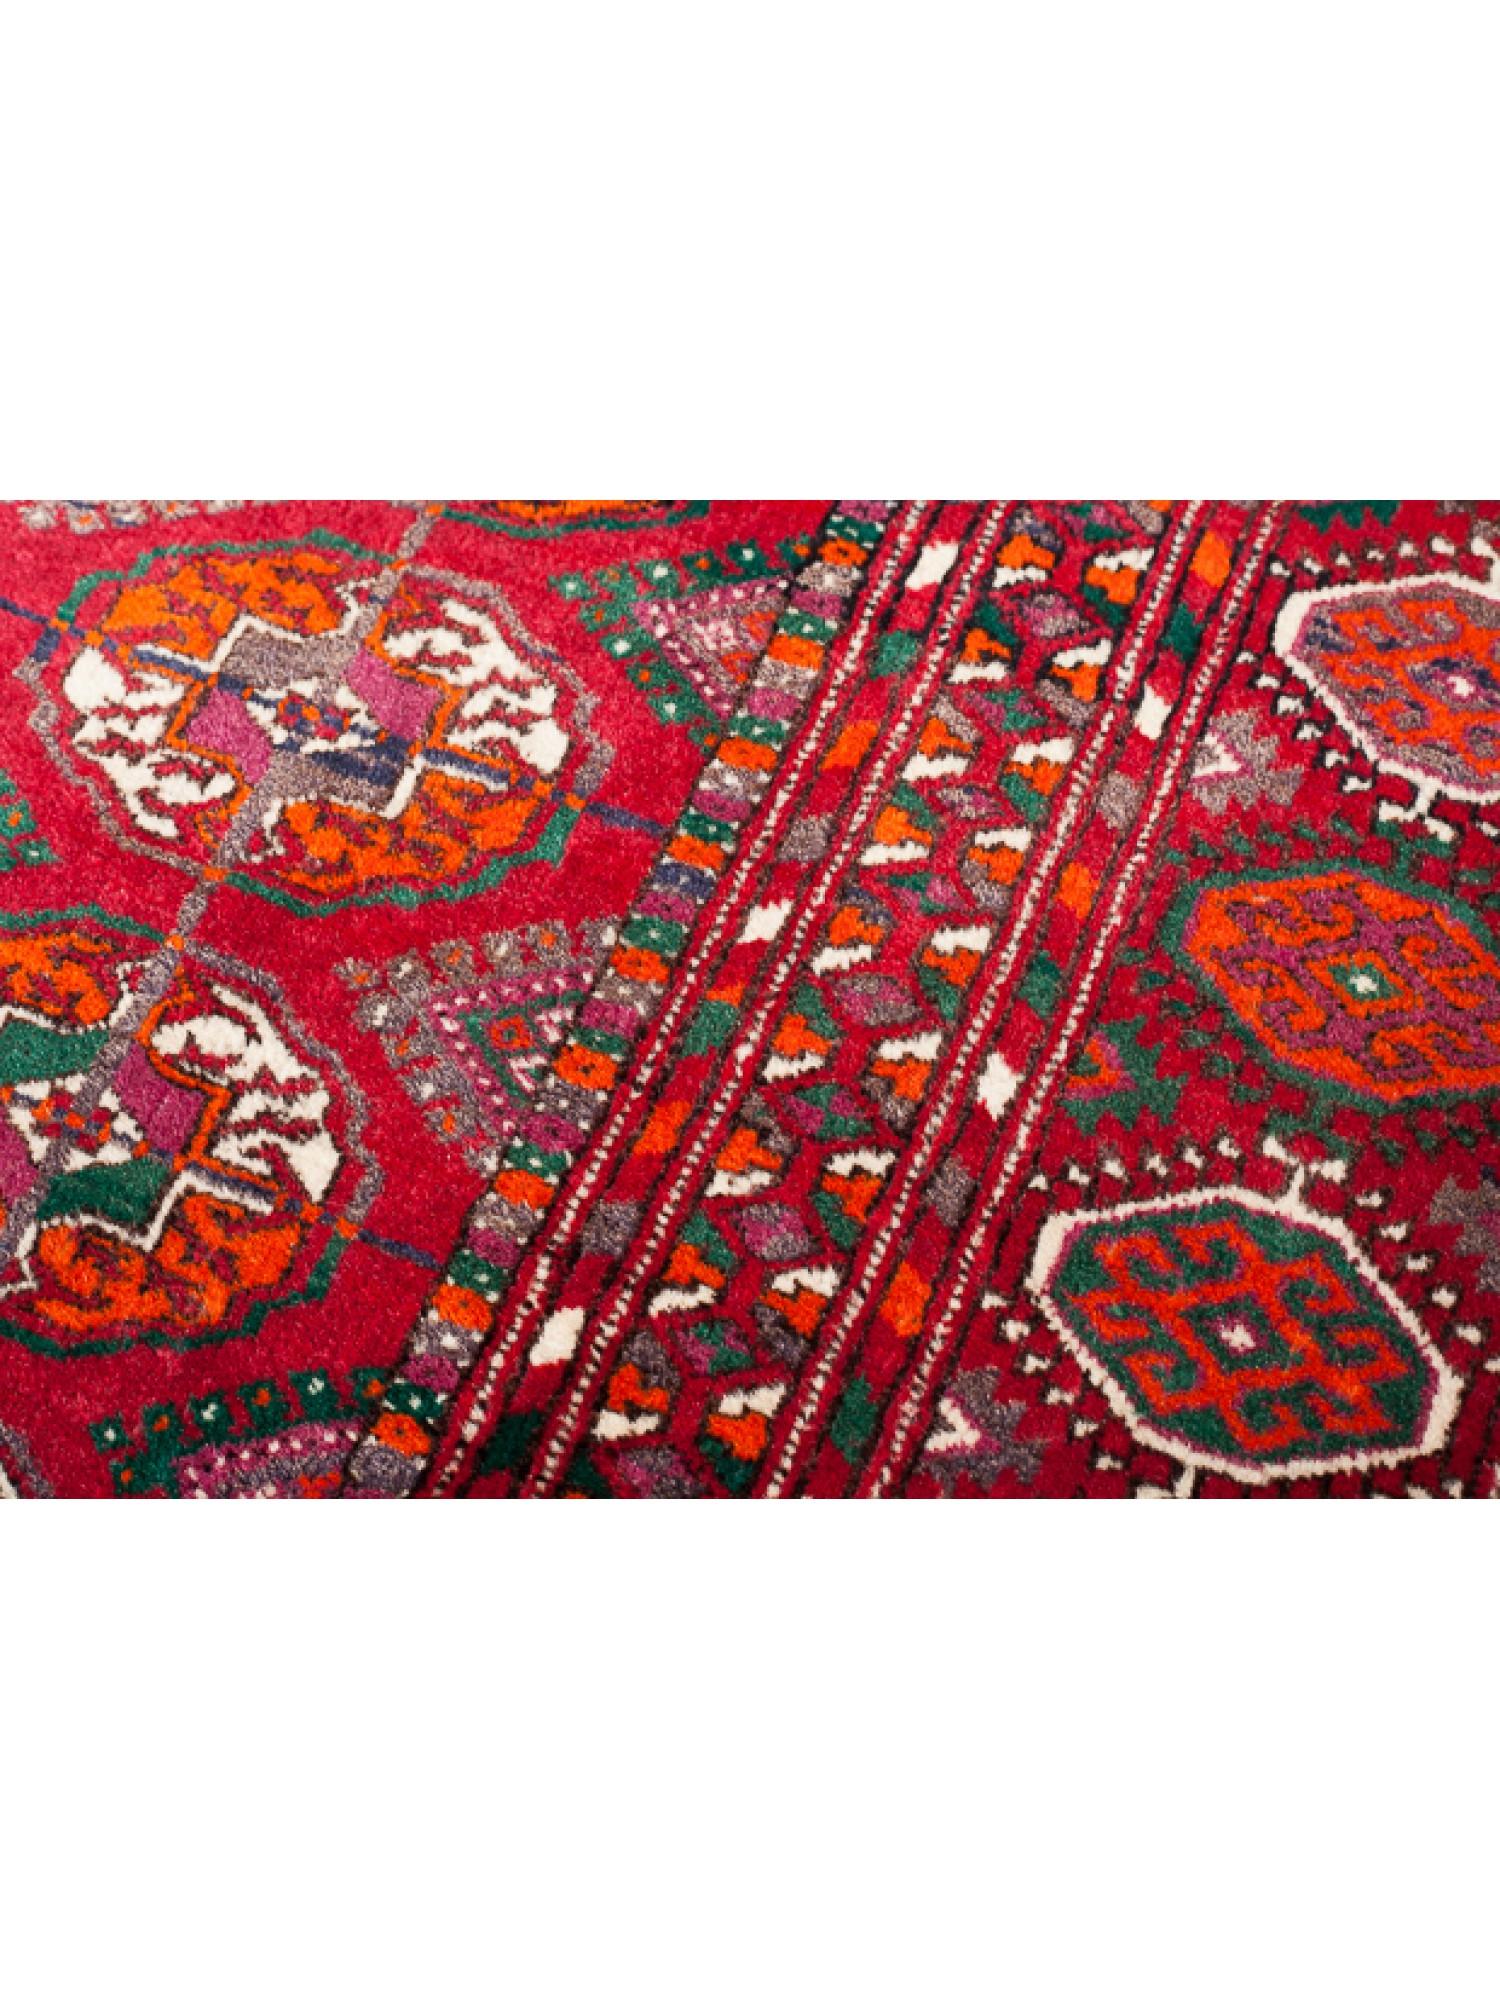 Hand-Woven Old Vintage Tekke Bukhara Turkmen Carpet, Turkoman Rug For Sale